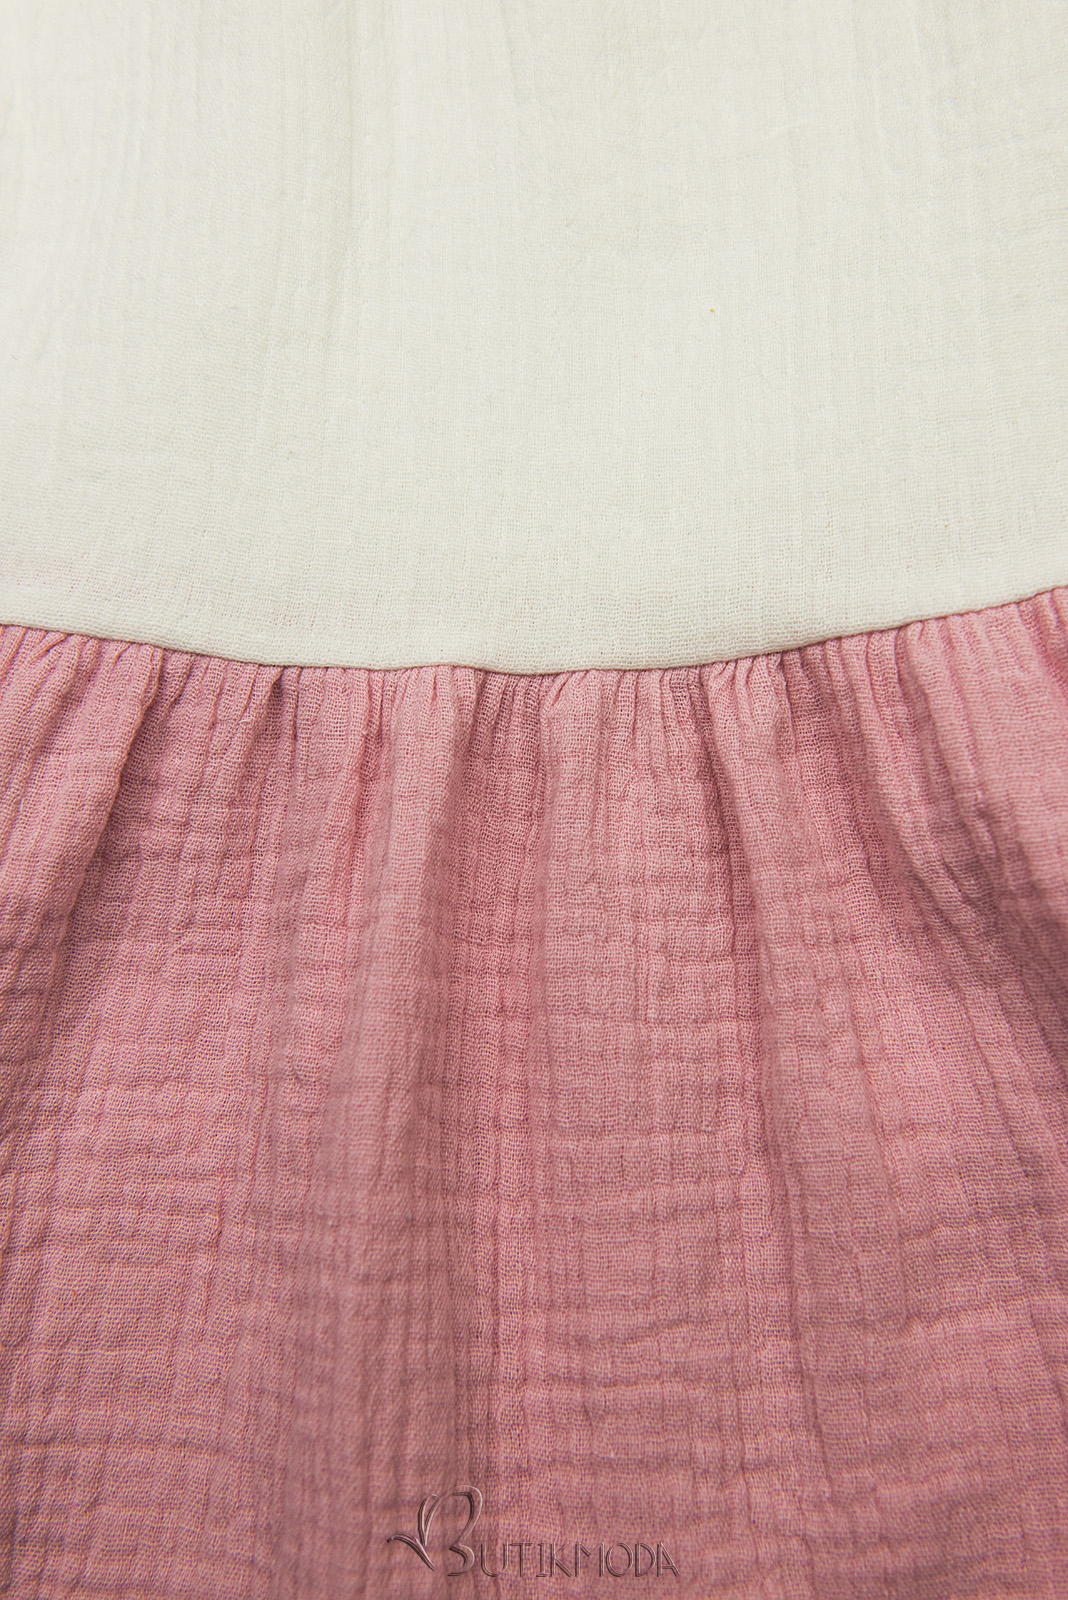 Fehér, rózsaszín és kék színű pamut ruha